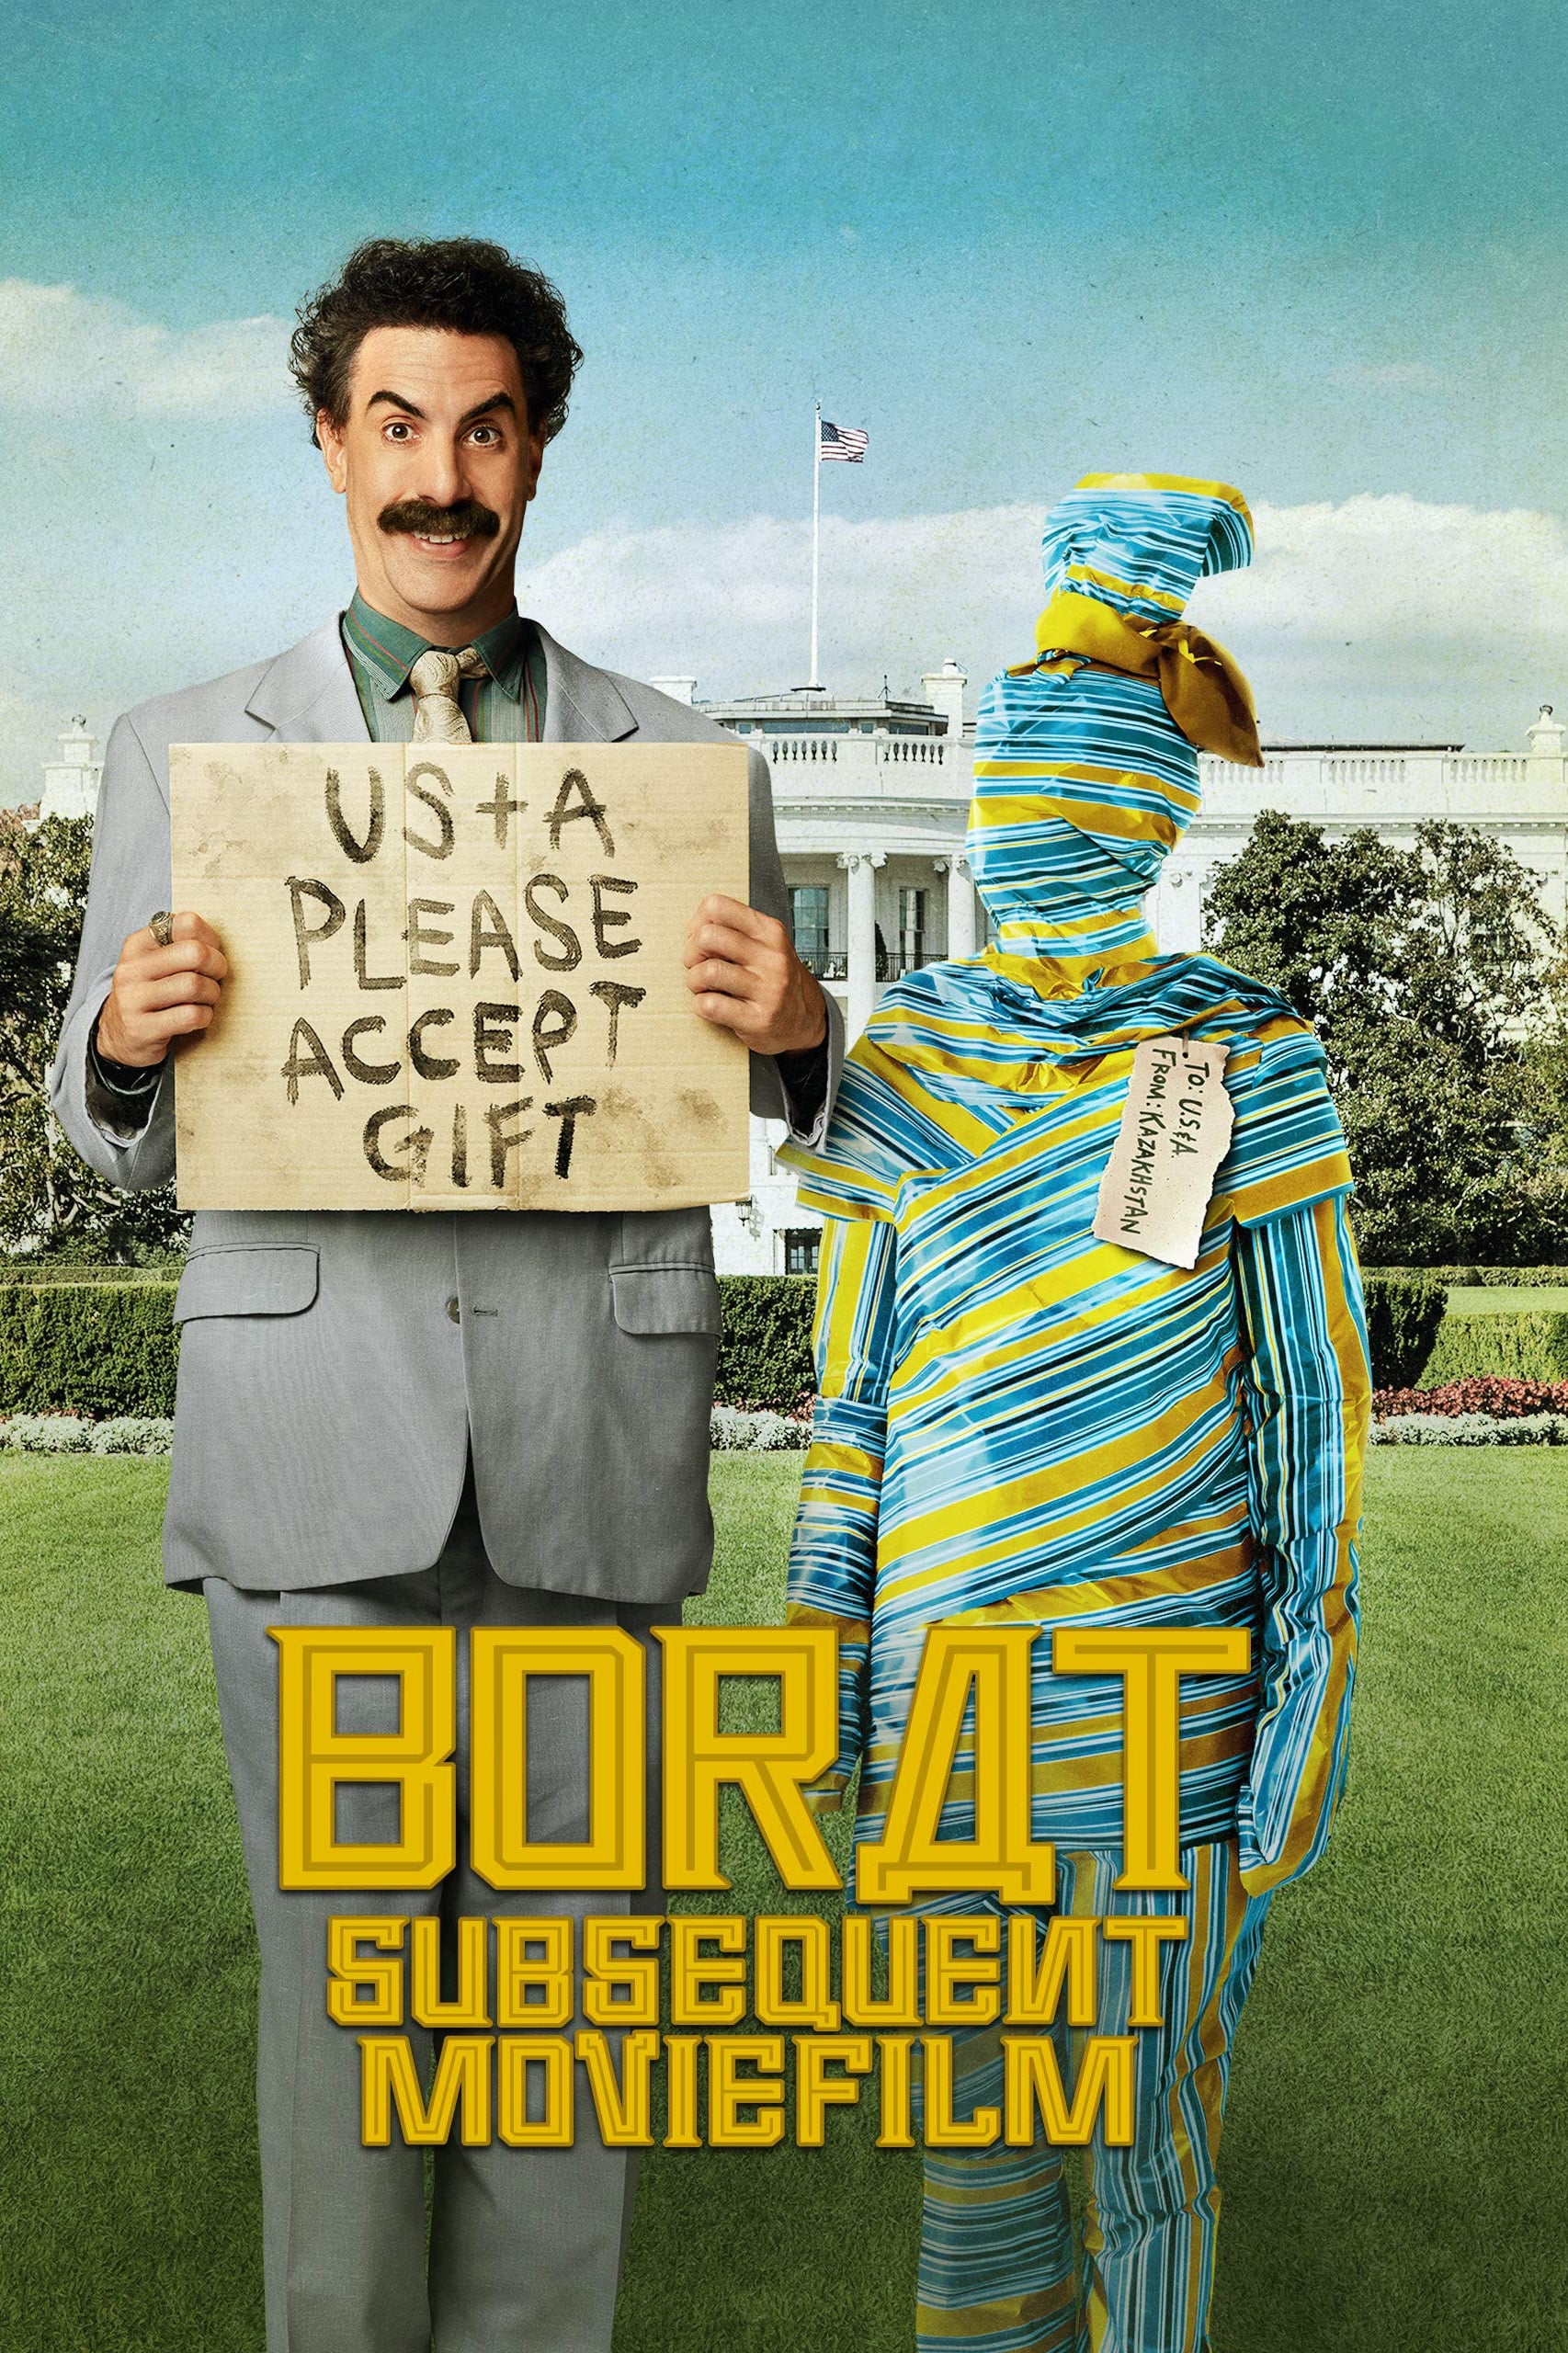 50. Borat Subsequent Moviefilm (2020)